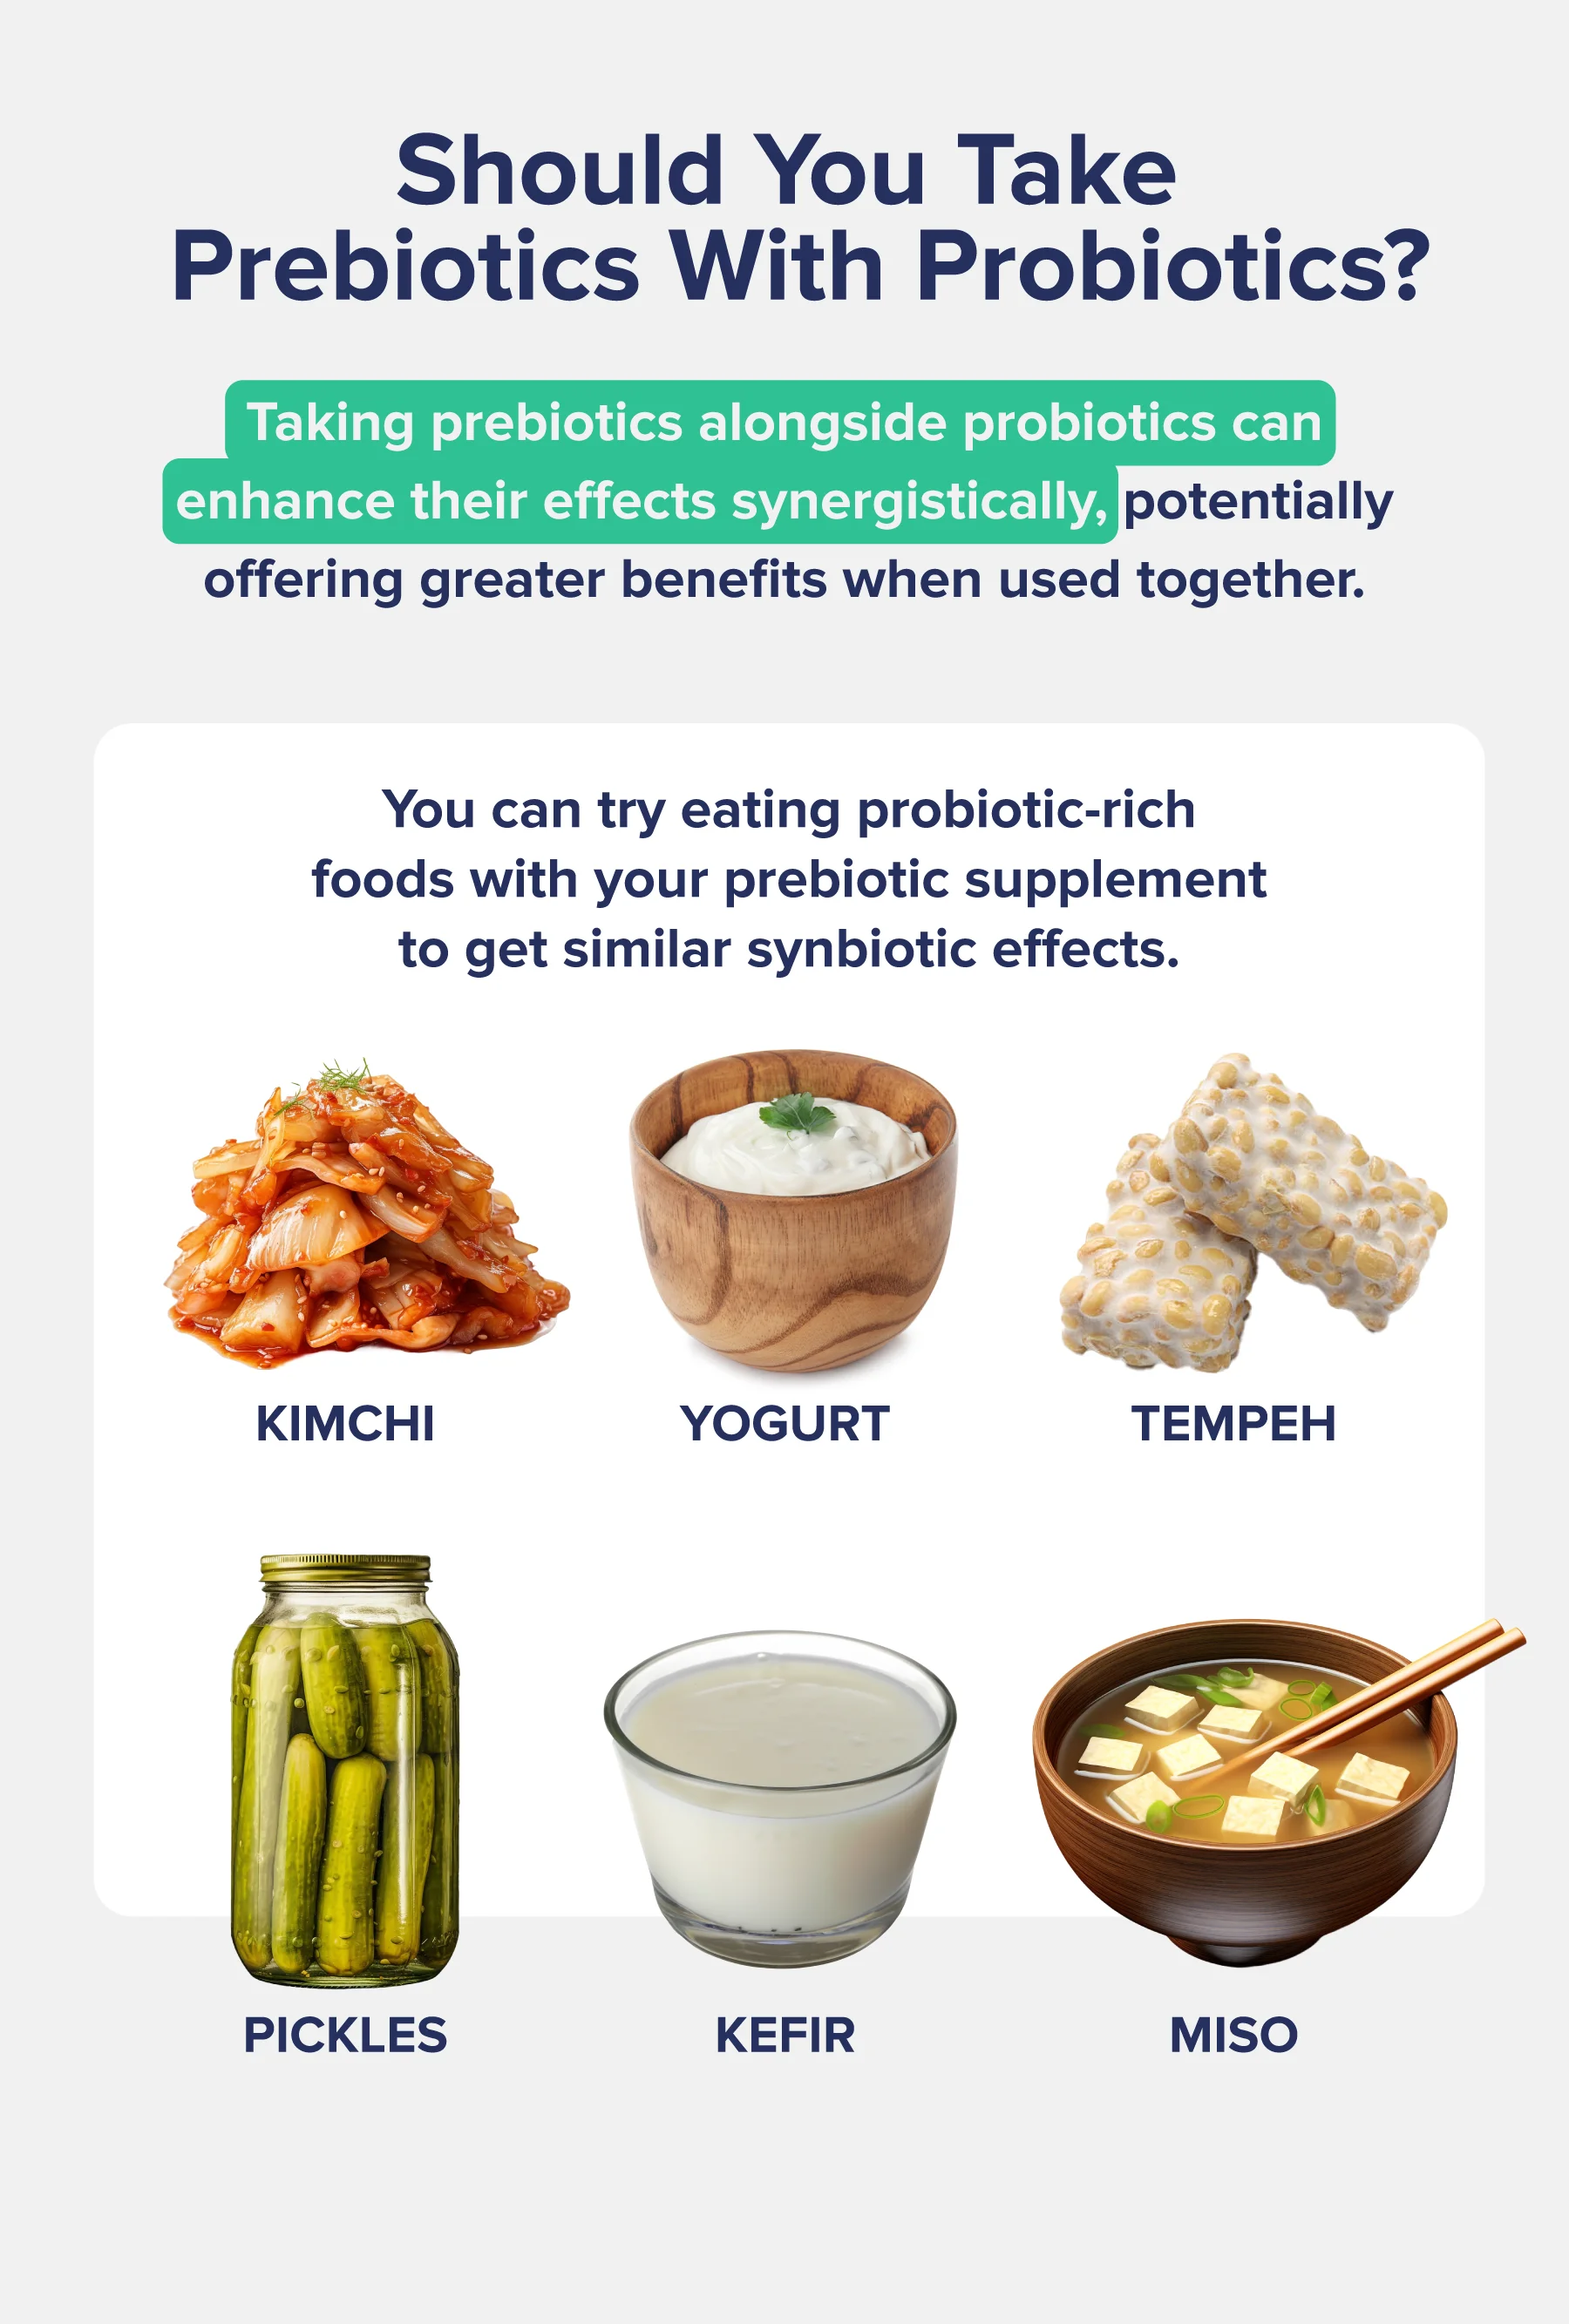 Should you take prebiotics with prebiotics?